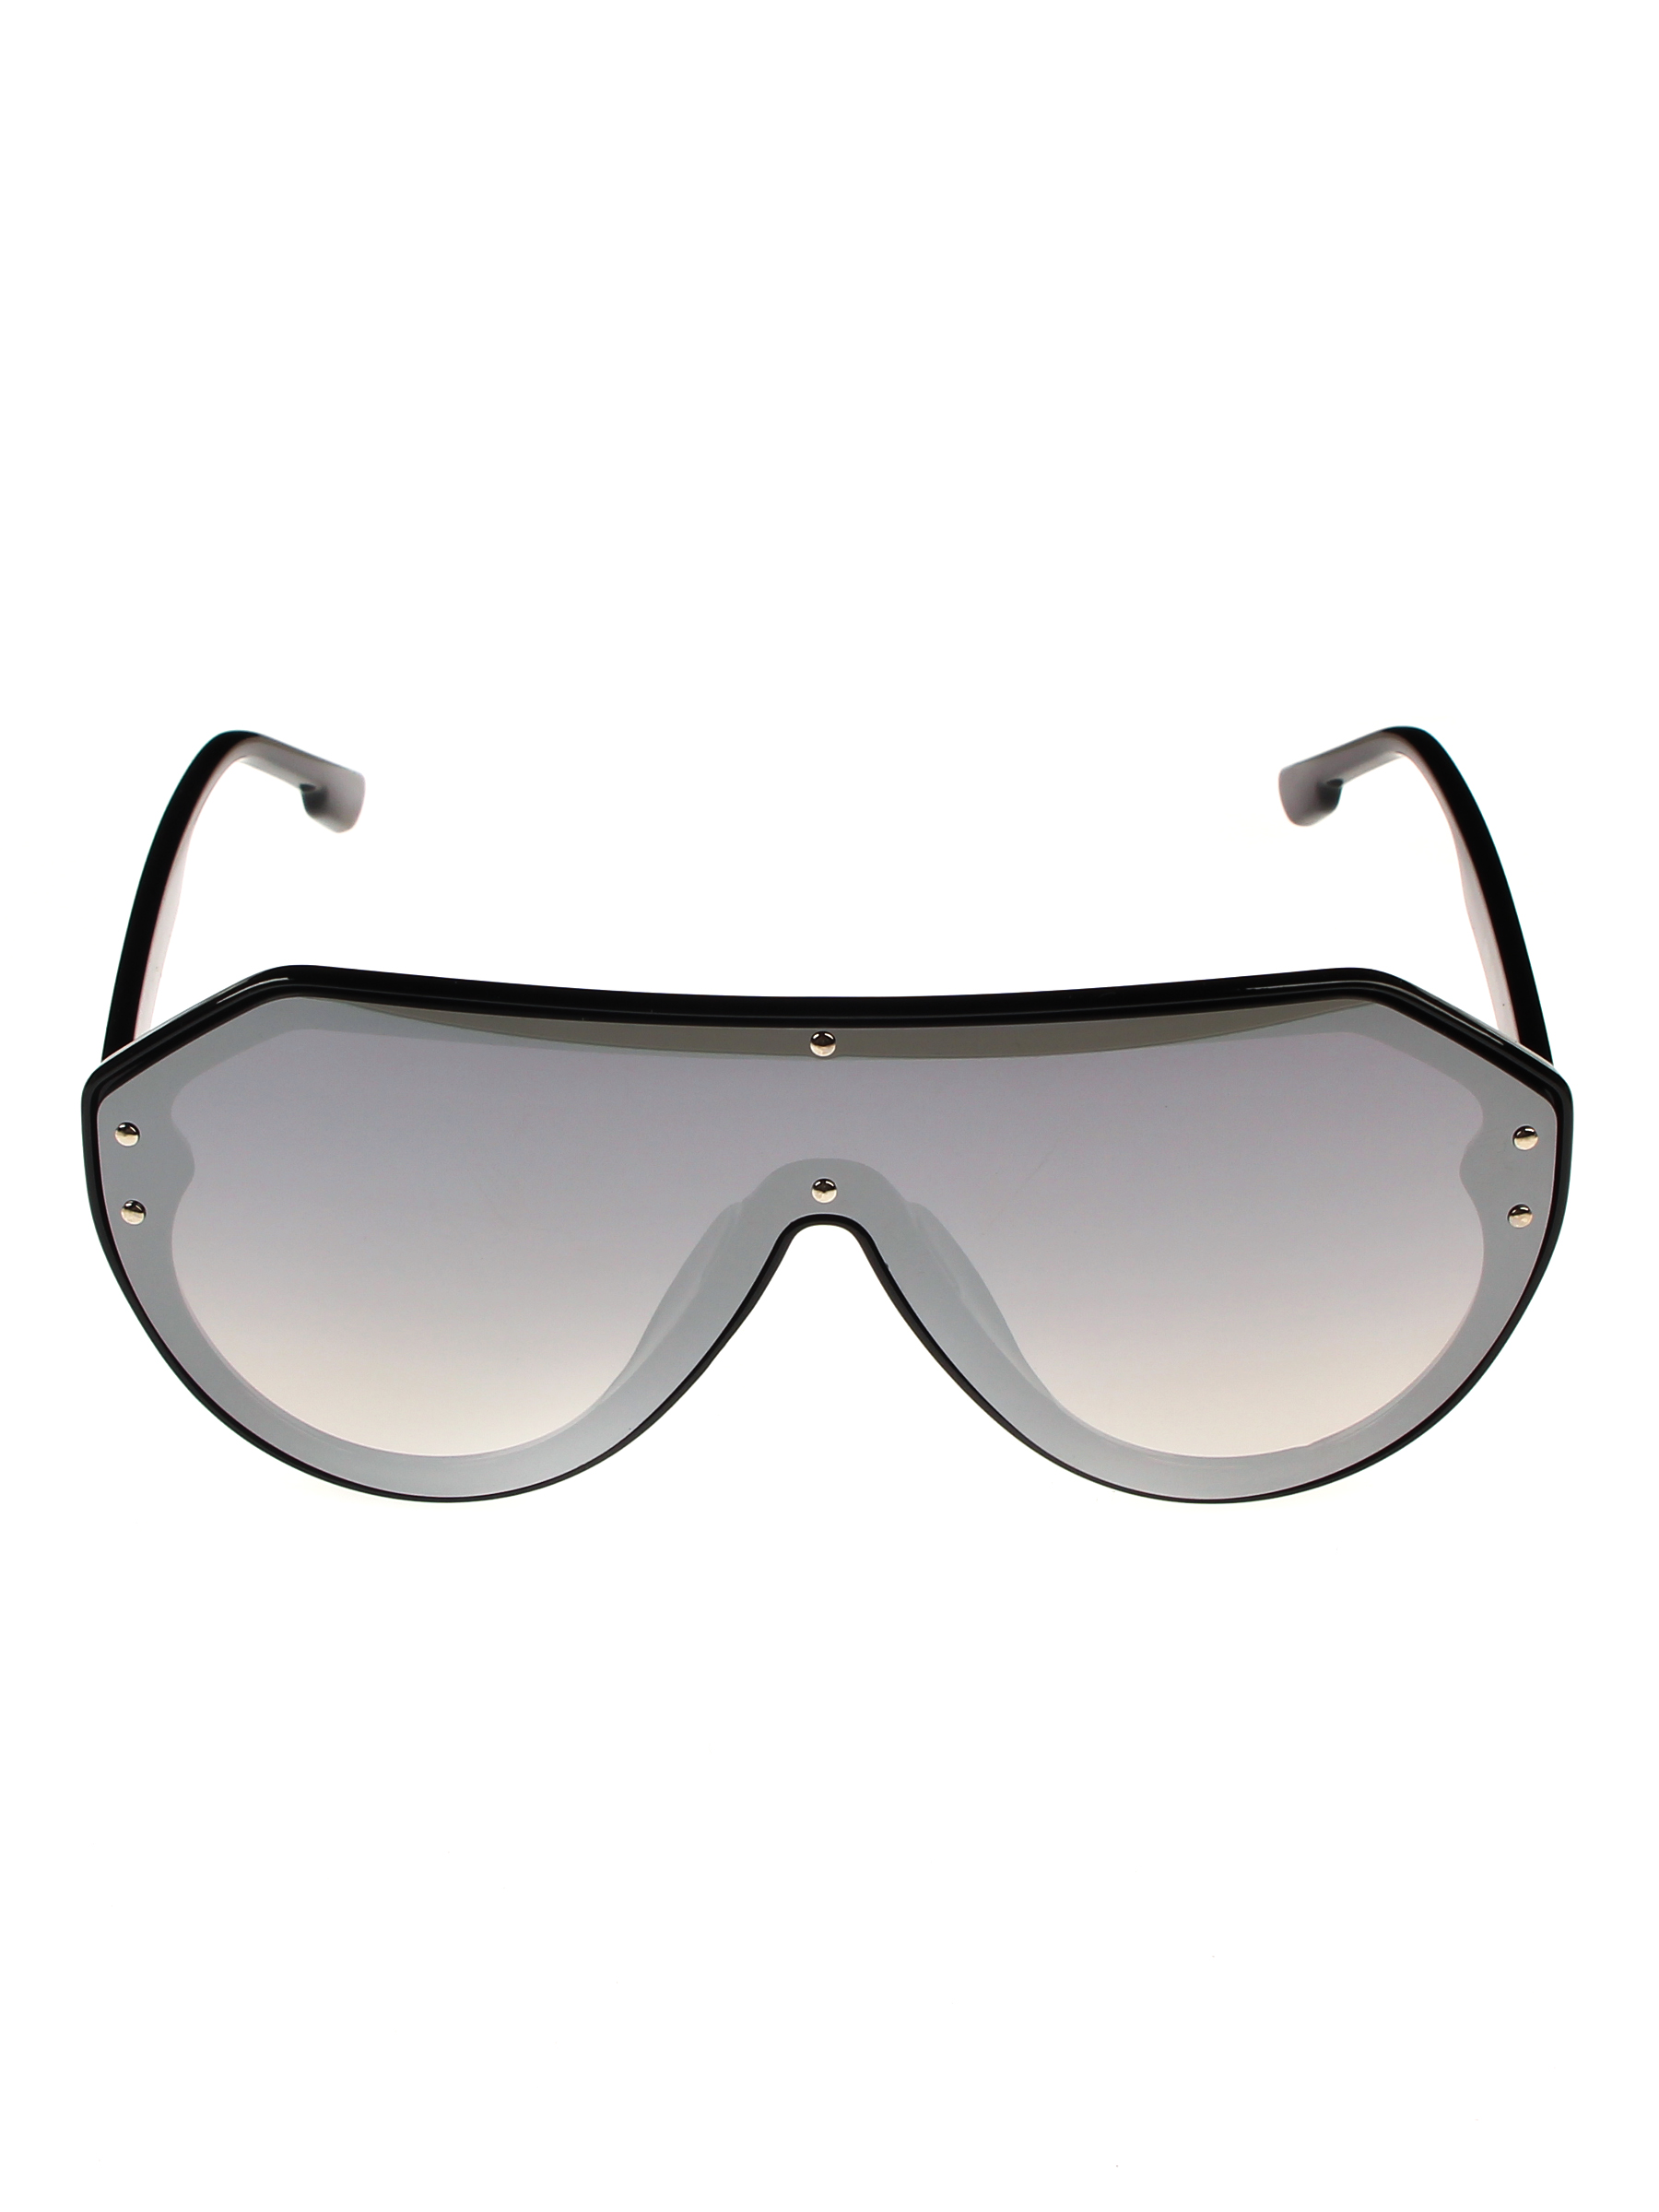 Солнцезащитные очки женские Pretty Mania NDP011 серые